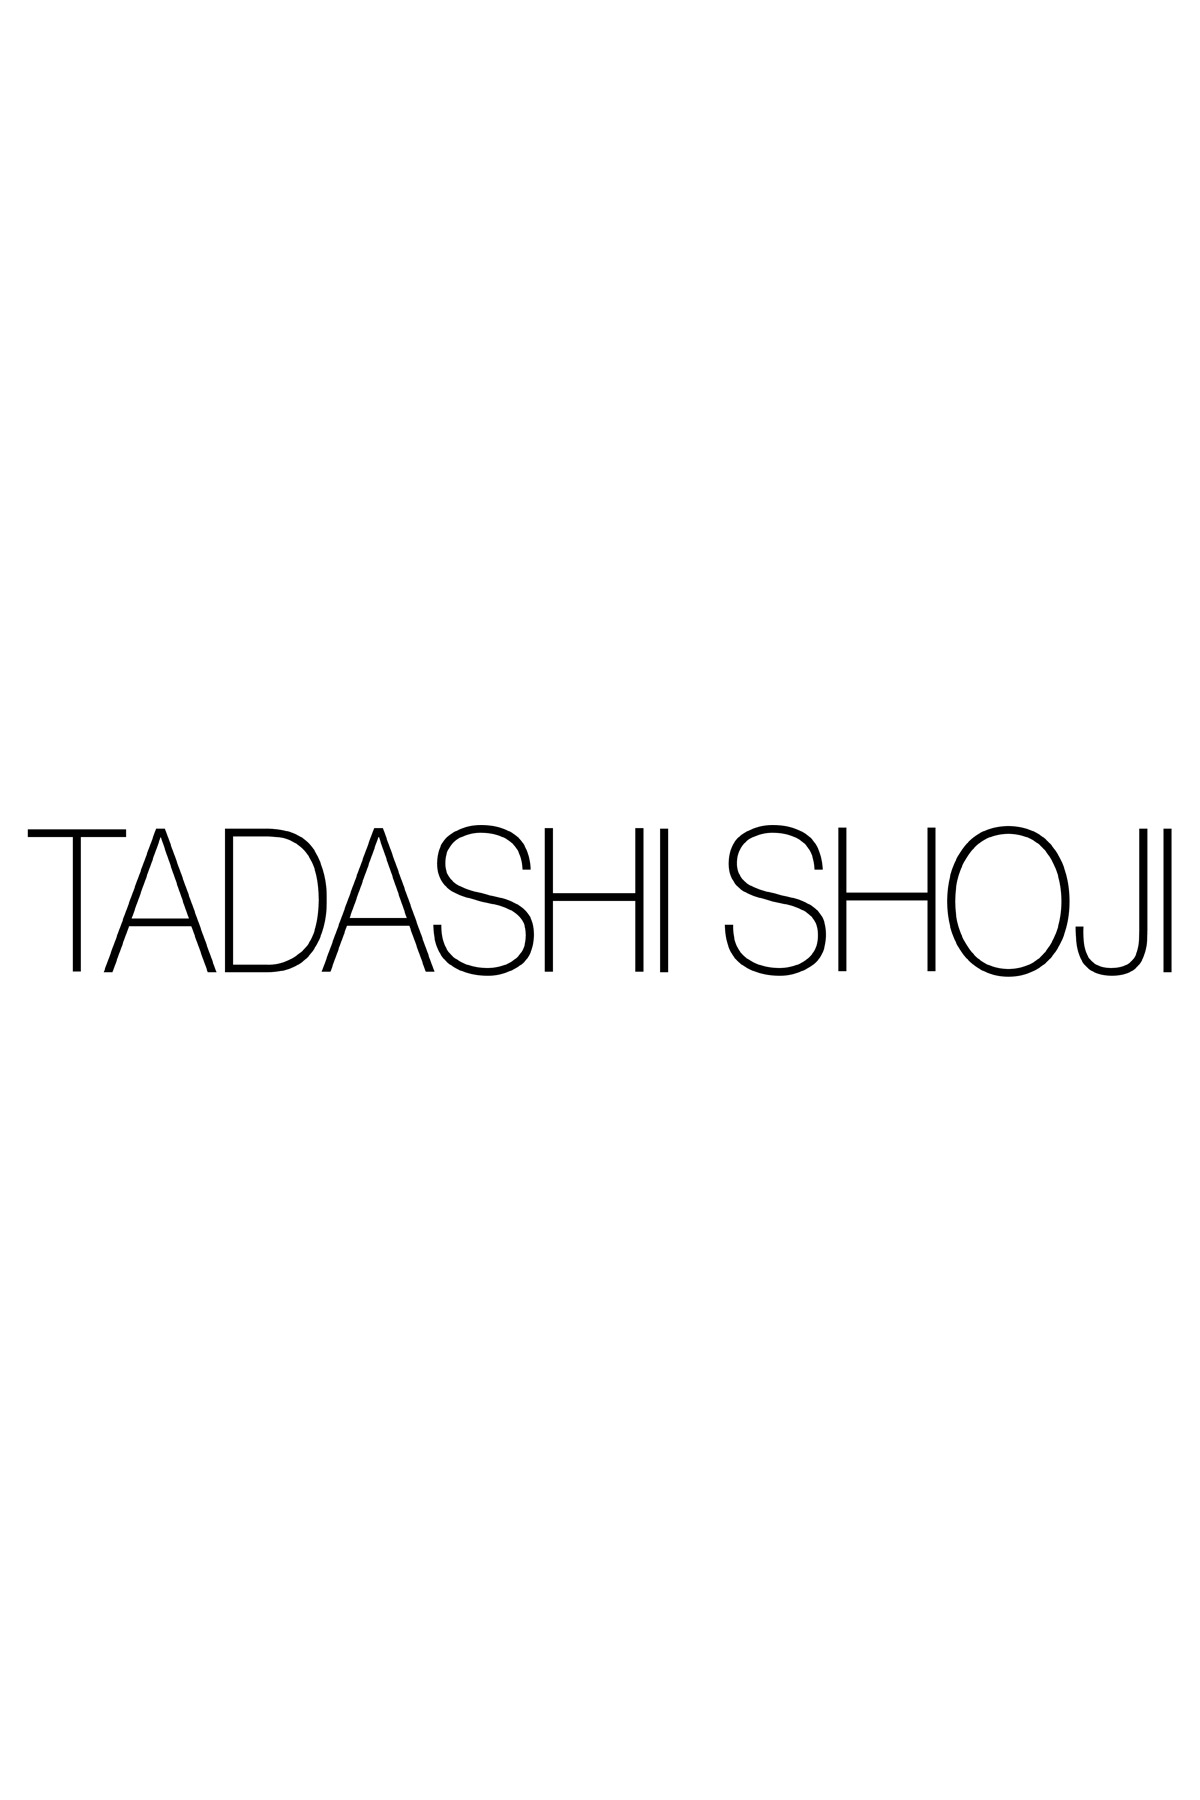 Tadashi Shoji Dress Size Chart